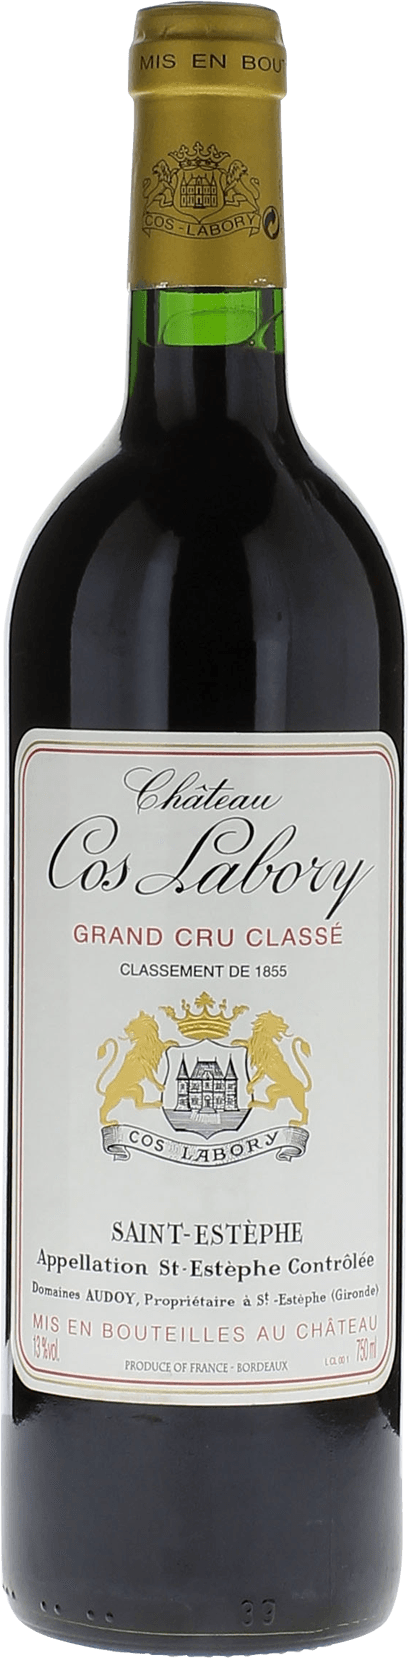 Cos labory 1989 5me Grand cru class Saint-Estphe, Bordeaux rouge